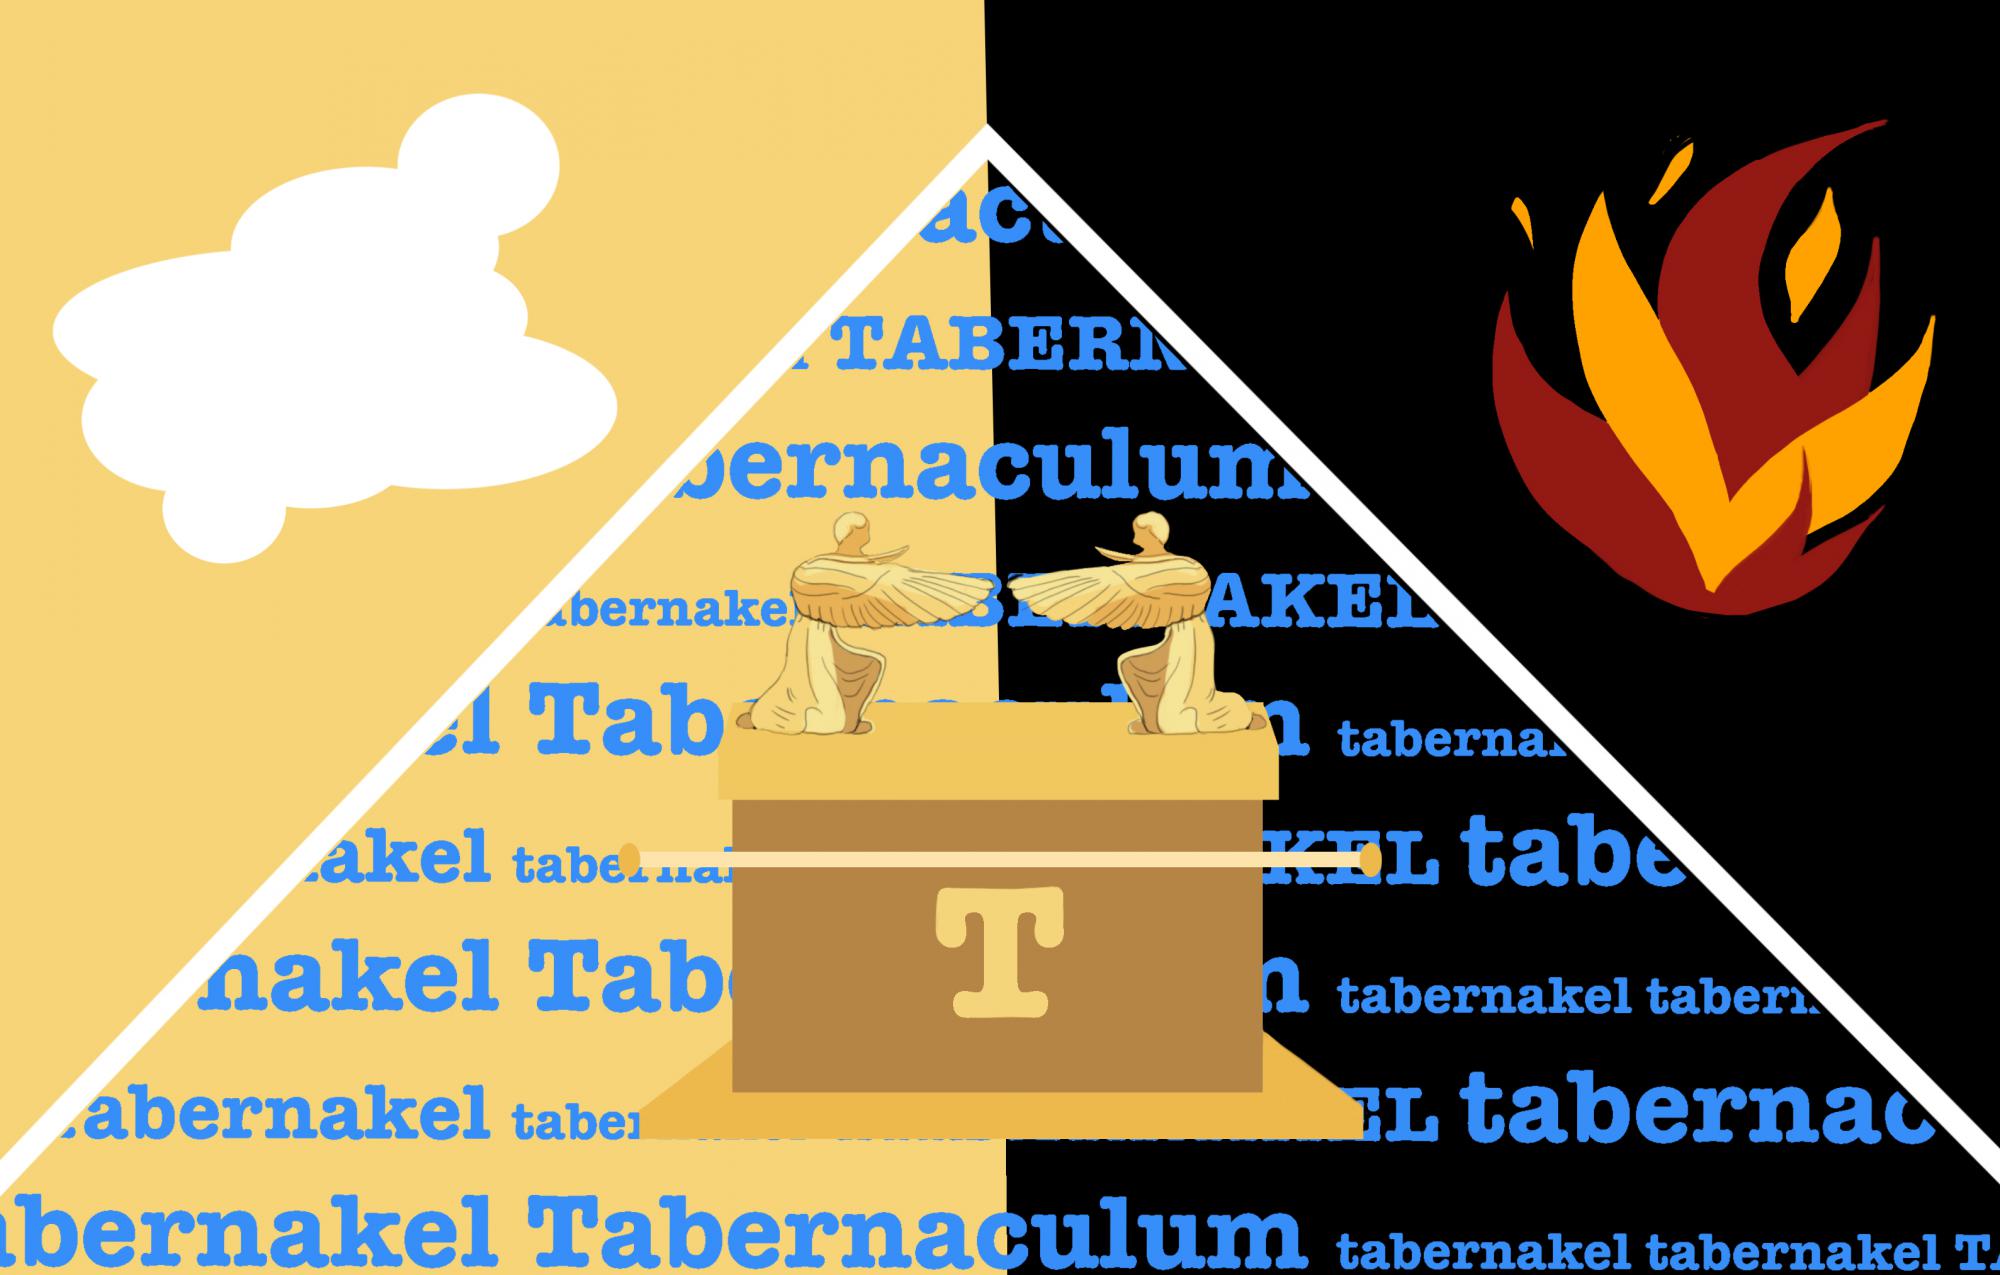 Bijbel van A tot Z: Tabernakel. Of hoe God nog steeds verblijft in een tent.